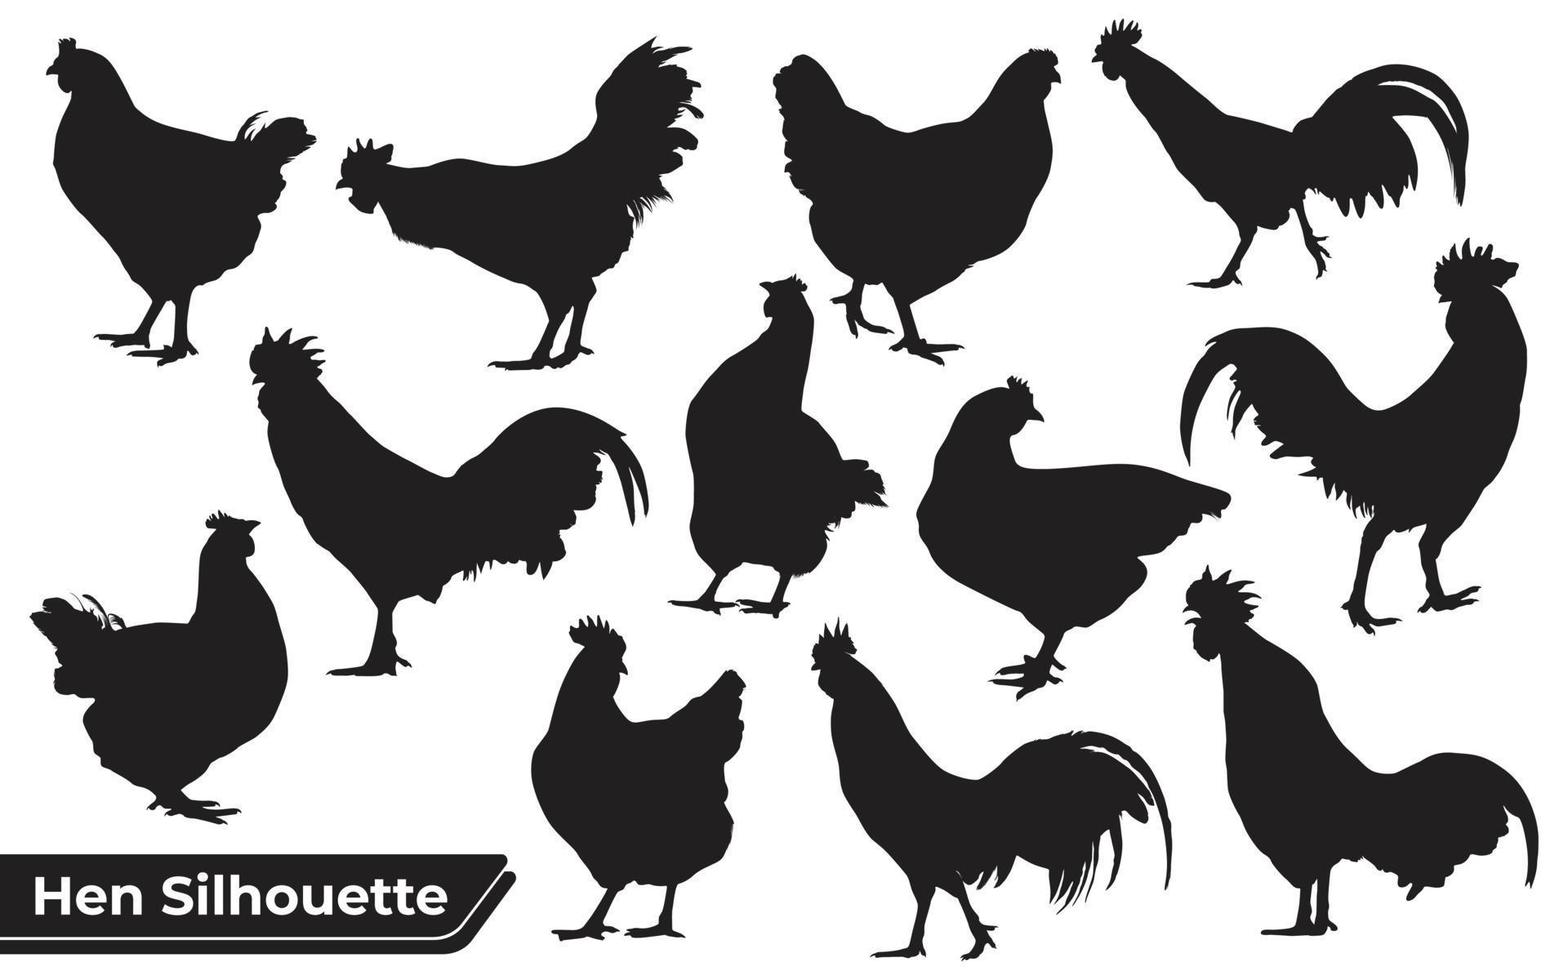 Sammlung von Hühner- oder Hühnersilhouetten in verschiedenen Posen vektor